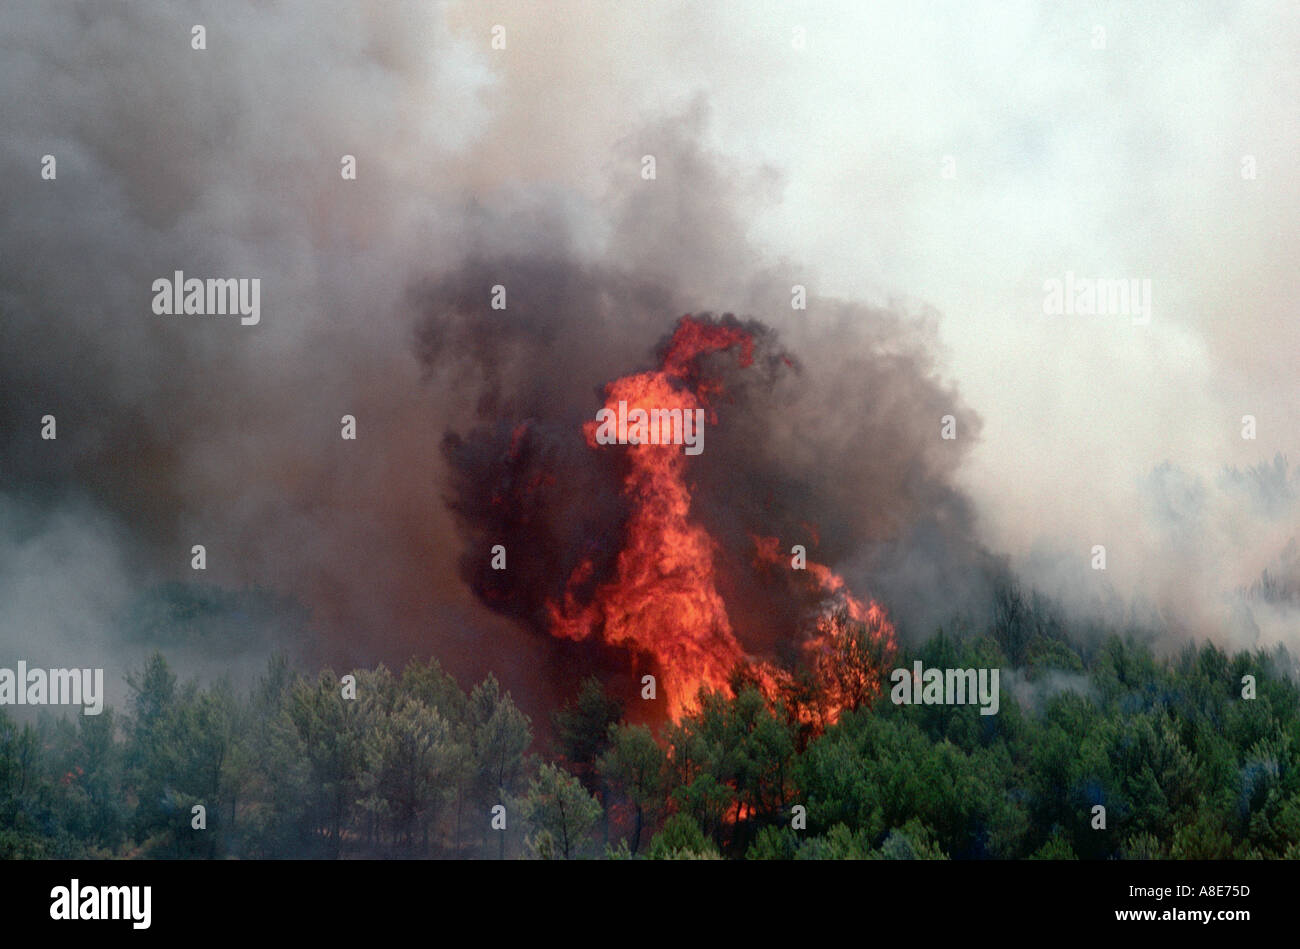 Vista aerea di un wildfire, fiamme, forest fire fumo nero, Bouches-du-Rhône, Provenza, Francia, Europa Foto Stock